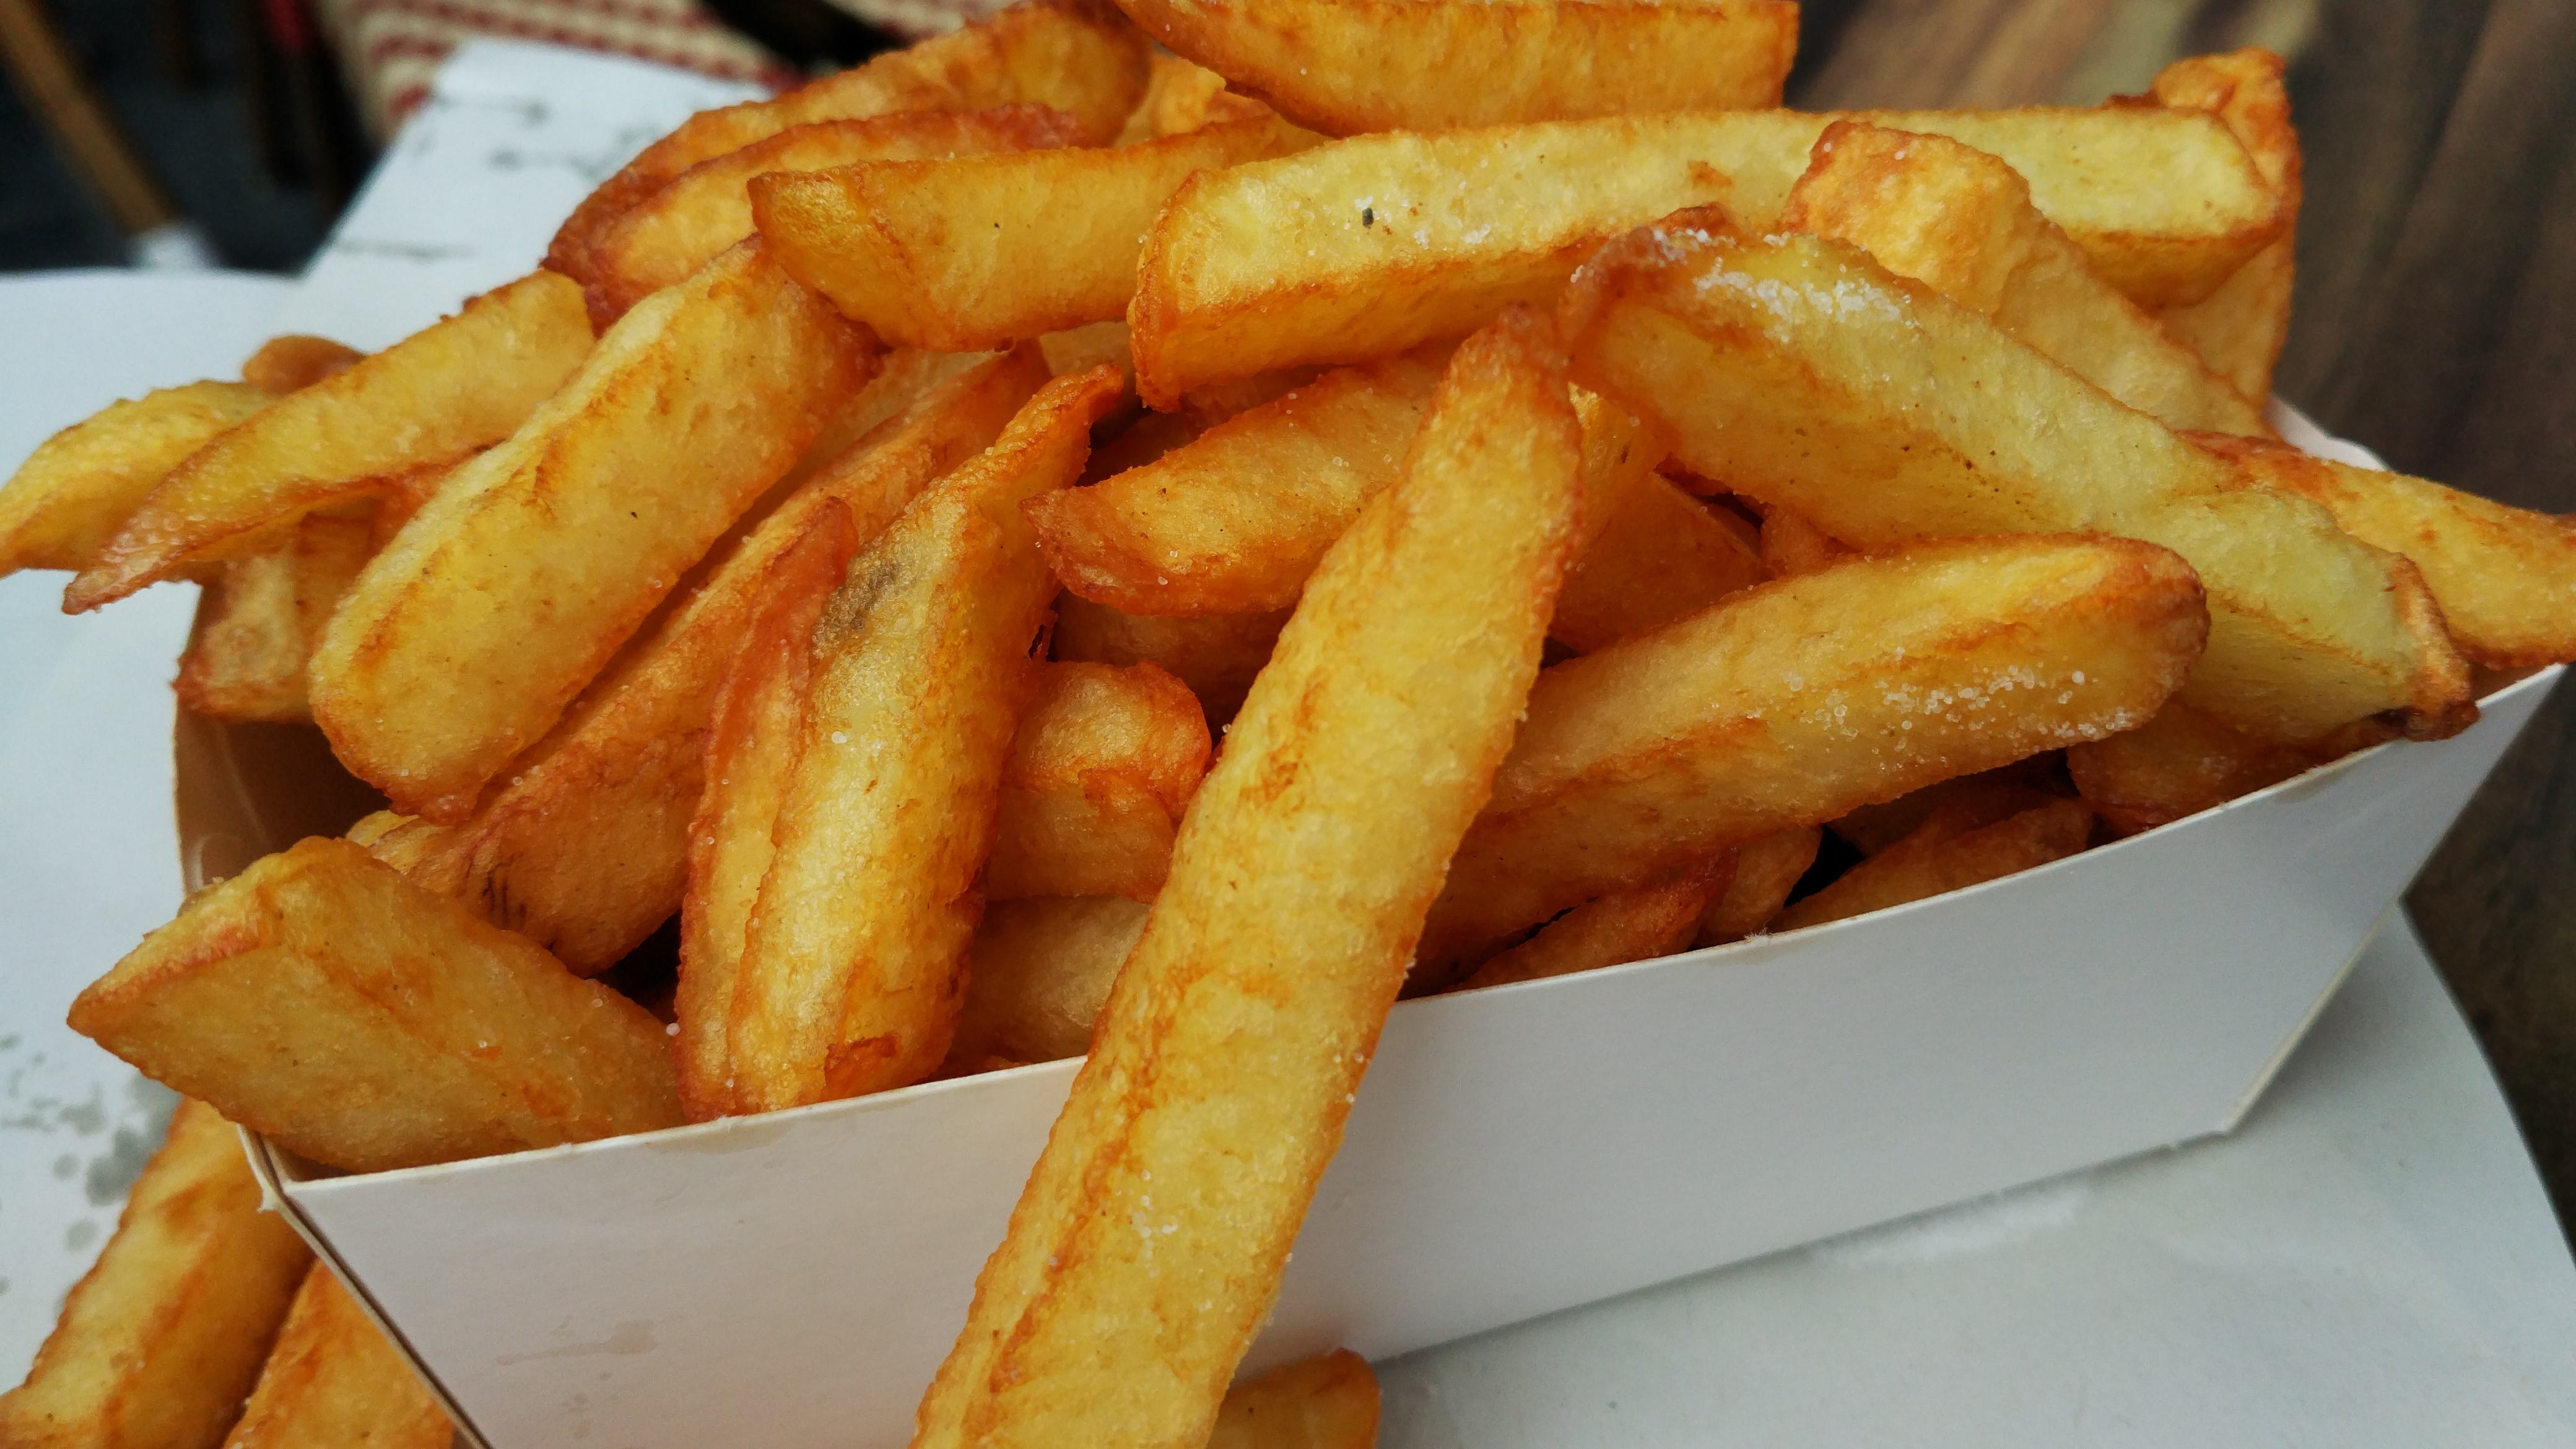 Zelfs onze friet moet wijken voor stikstofregels